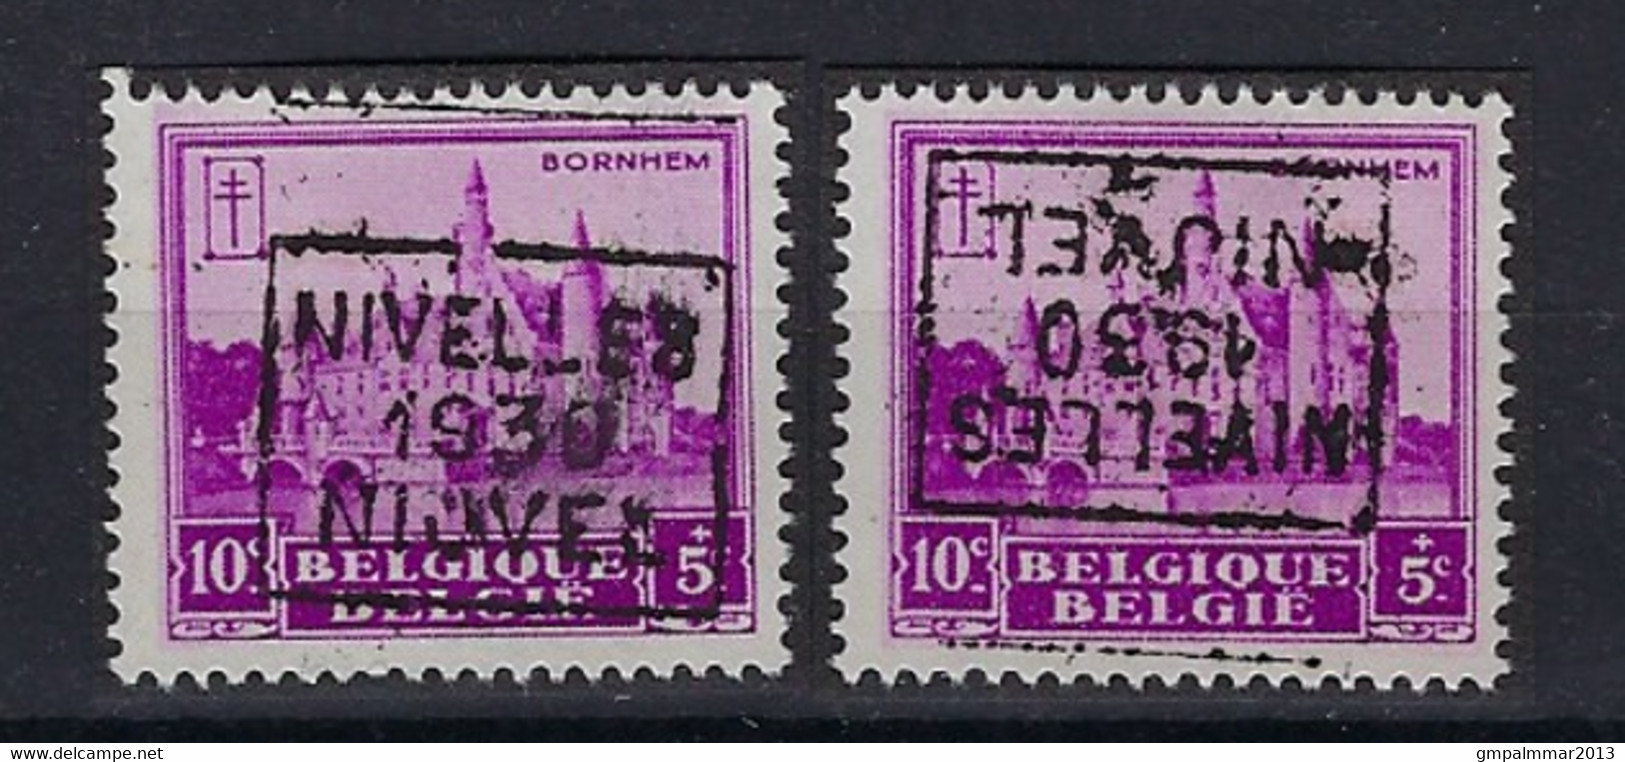 Nr. 308 Kasteel Bornem Voorafstempeling Nr. 5984   C + D NIVELLES 1930 NIJVEL ; Staat Zie Scan ! - Rolstempels 1930-..